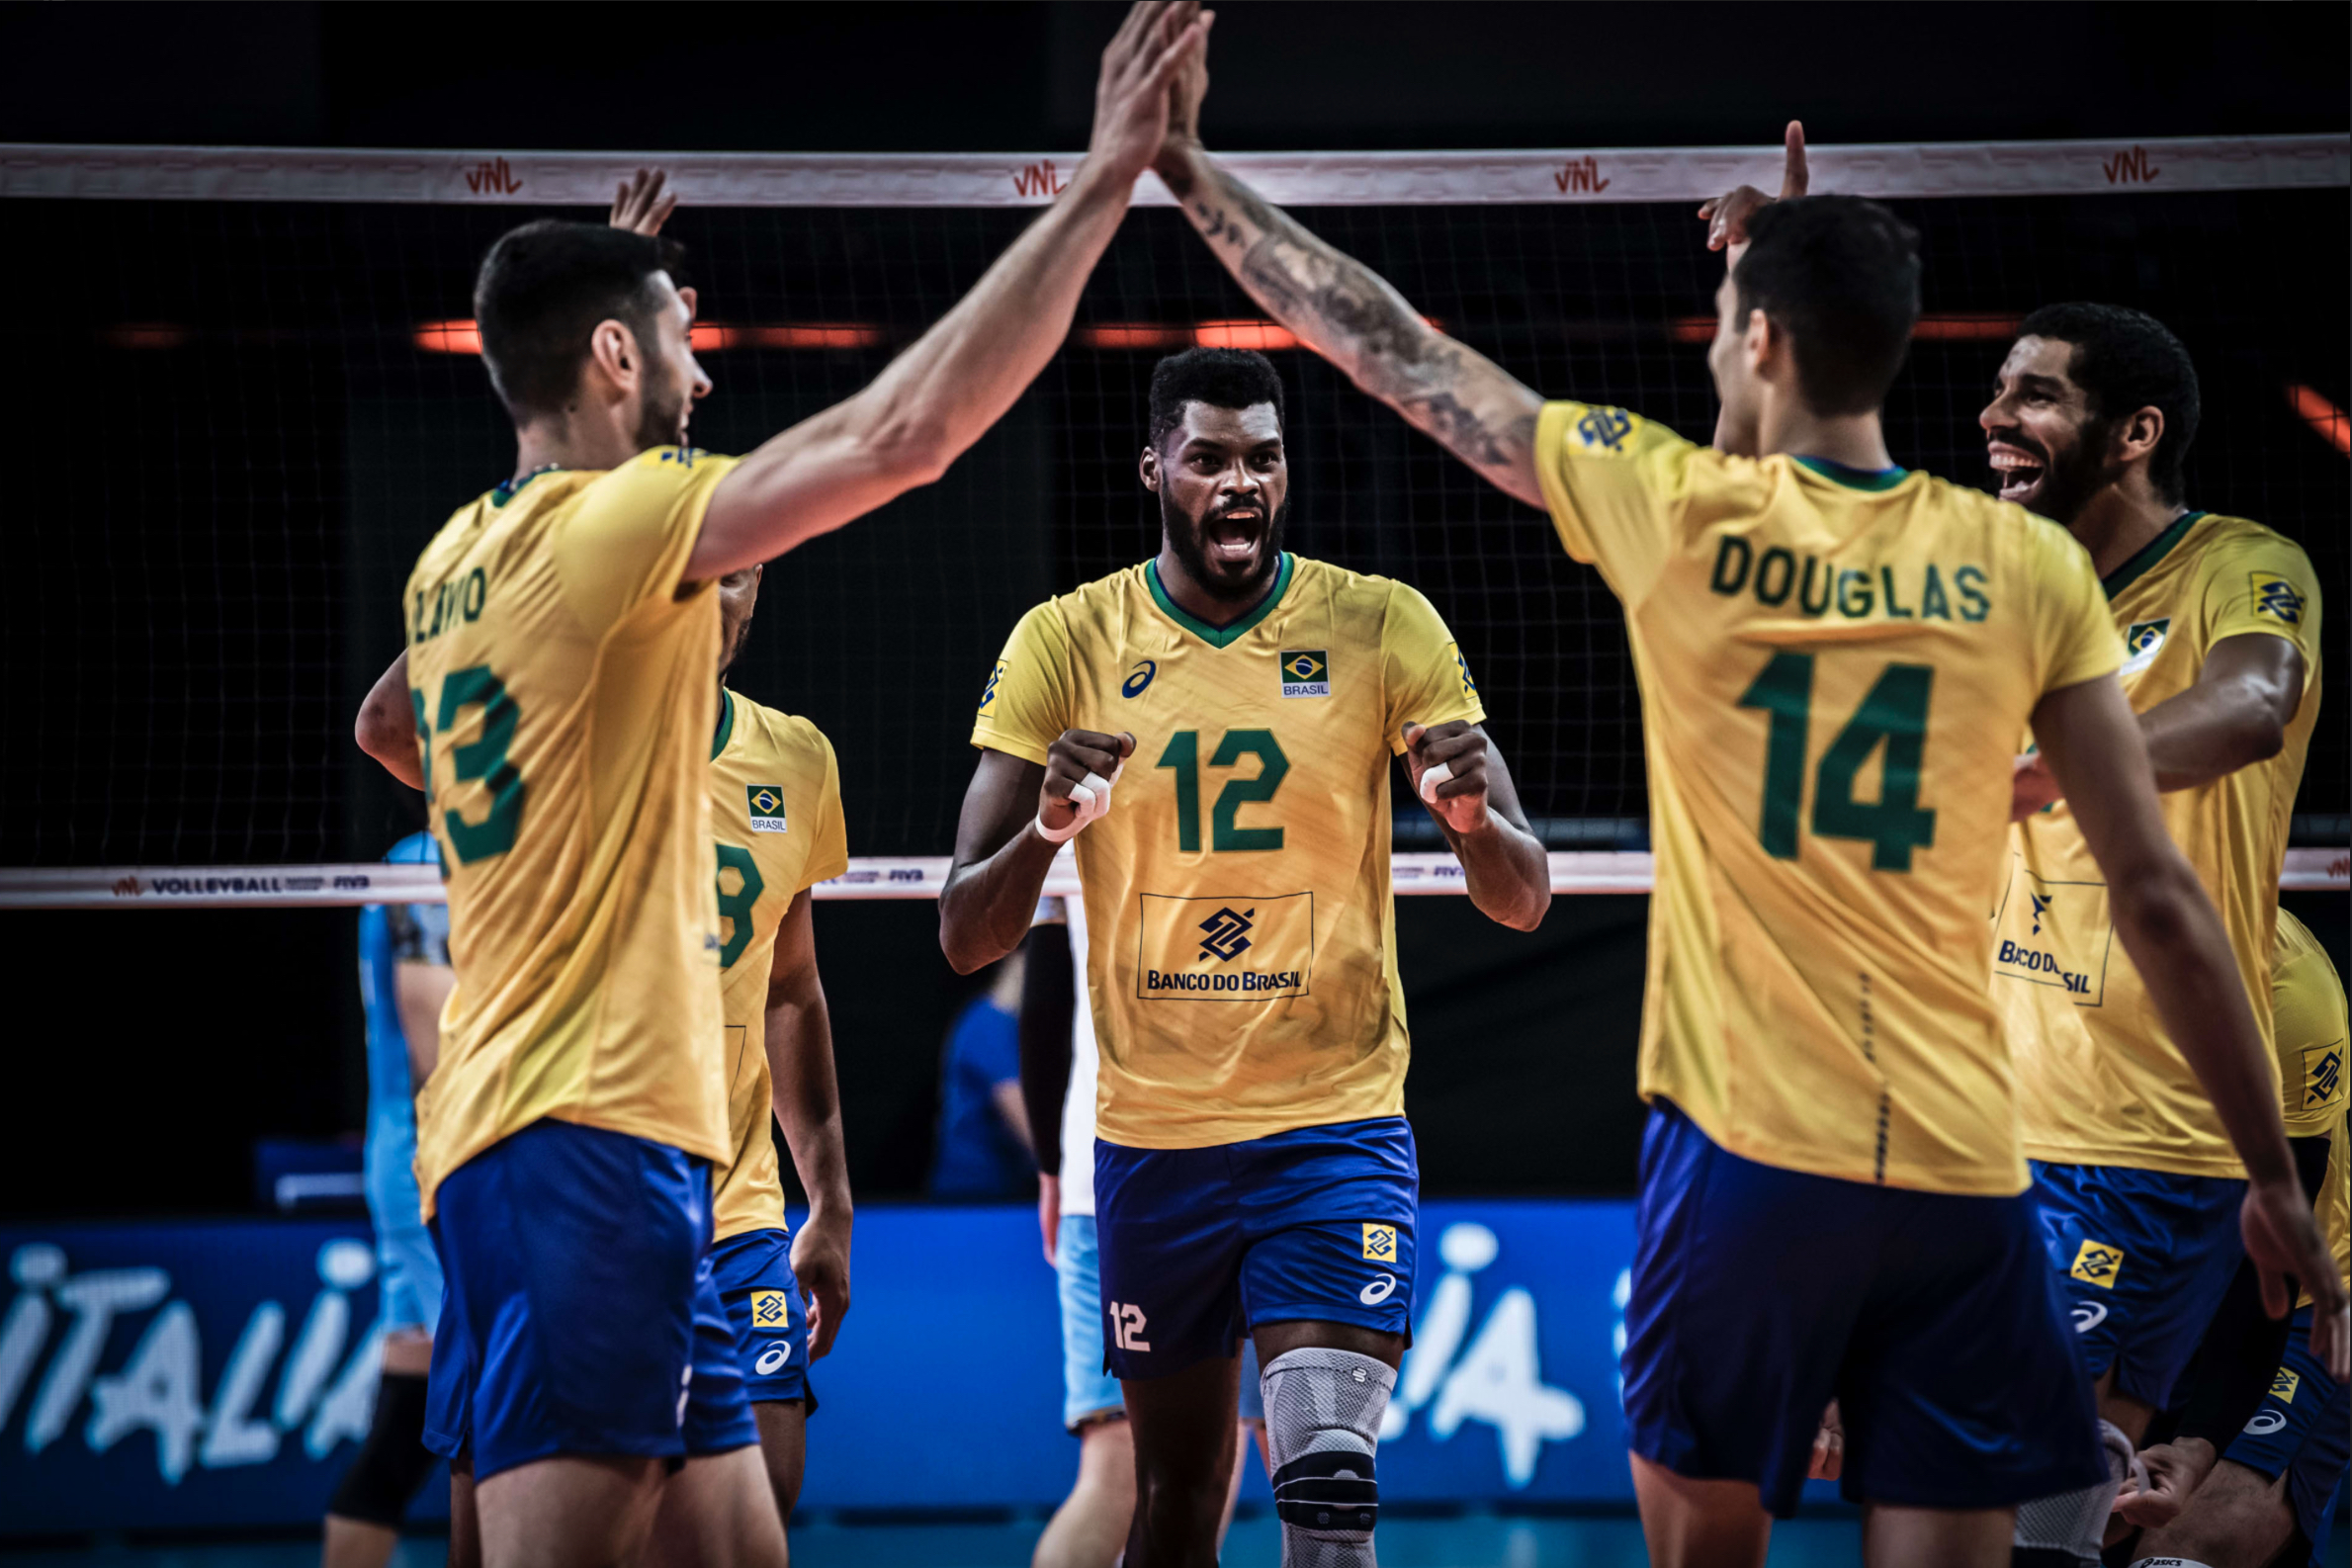 Seleção Brasileira masculina, seleção de vôlei, Vôlei, Liga das Nações, VNL, Brasil, Canadá